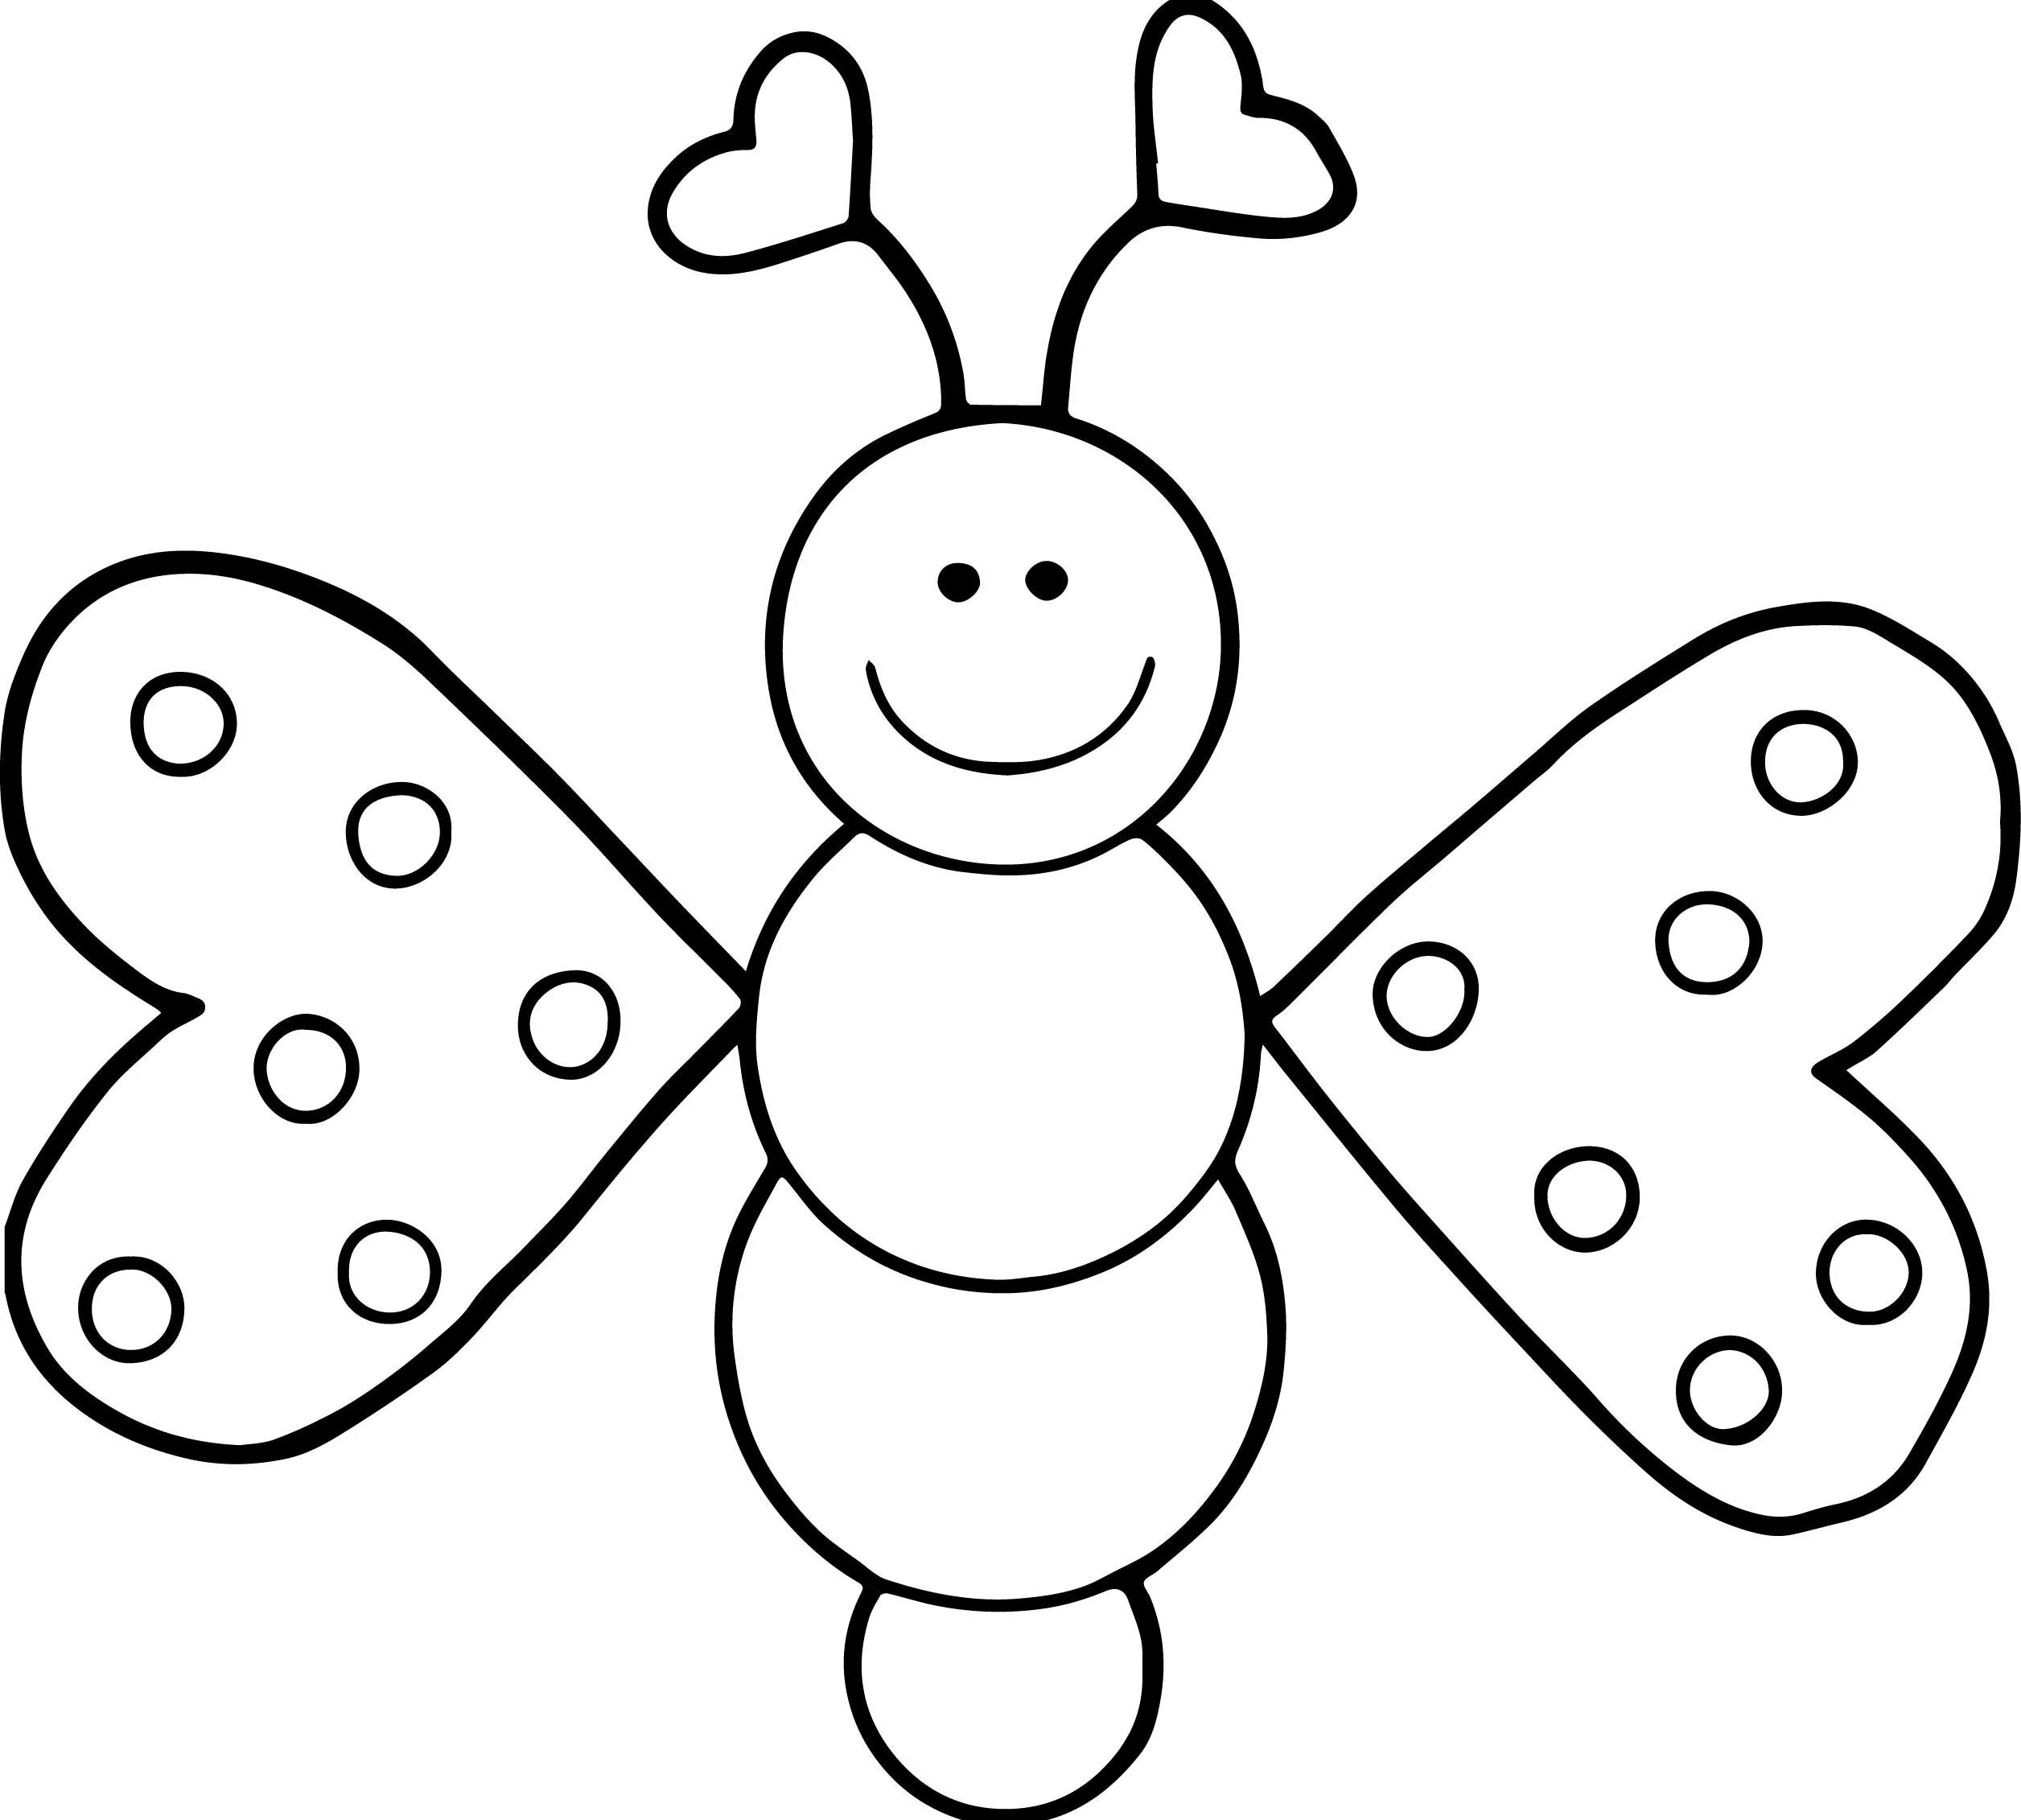 Трафарет для детей 3 лет. Бабочка раскраска для детей. Бабочка раскраска для детей 3-4 лет. Бабочка раскраска для малышей. Детская раскраска бабочка.